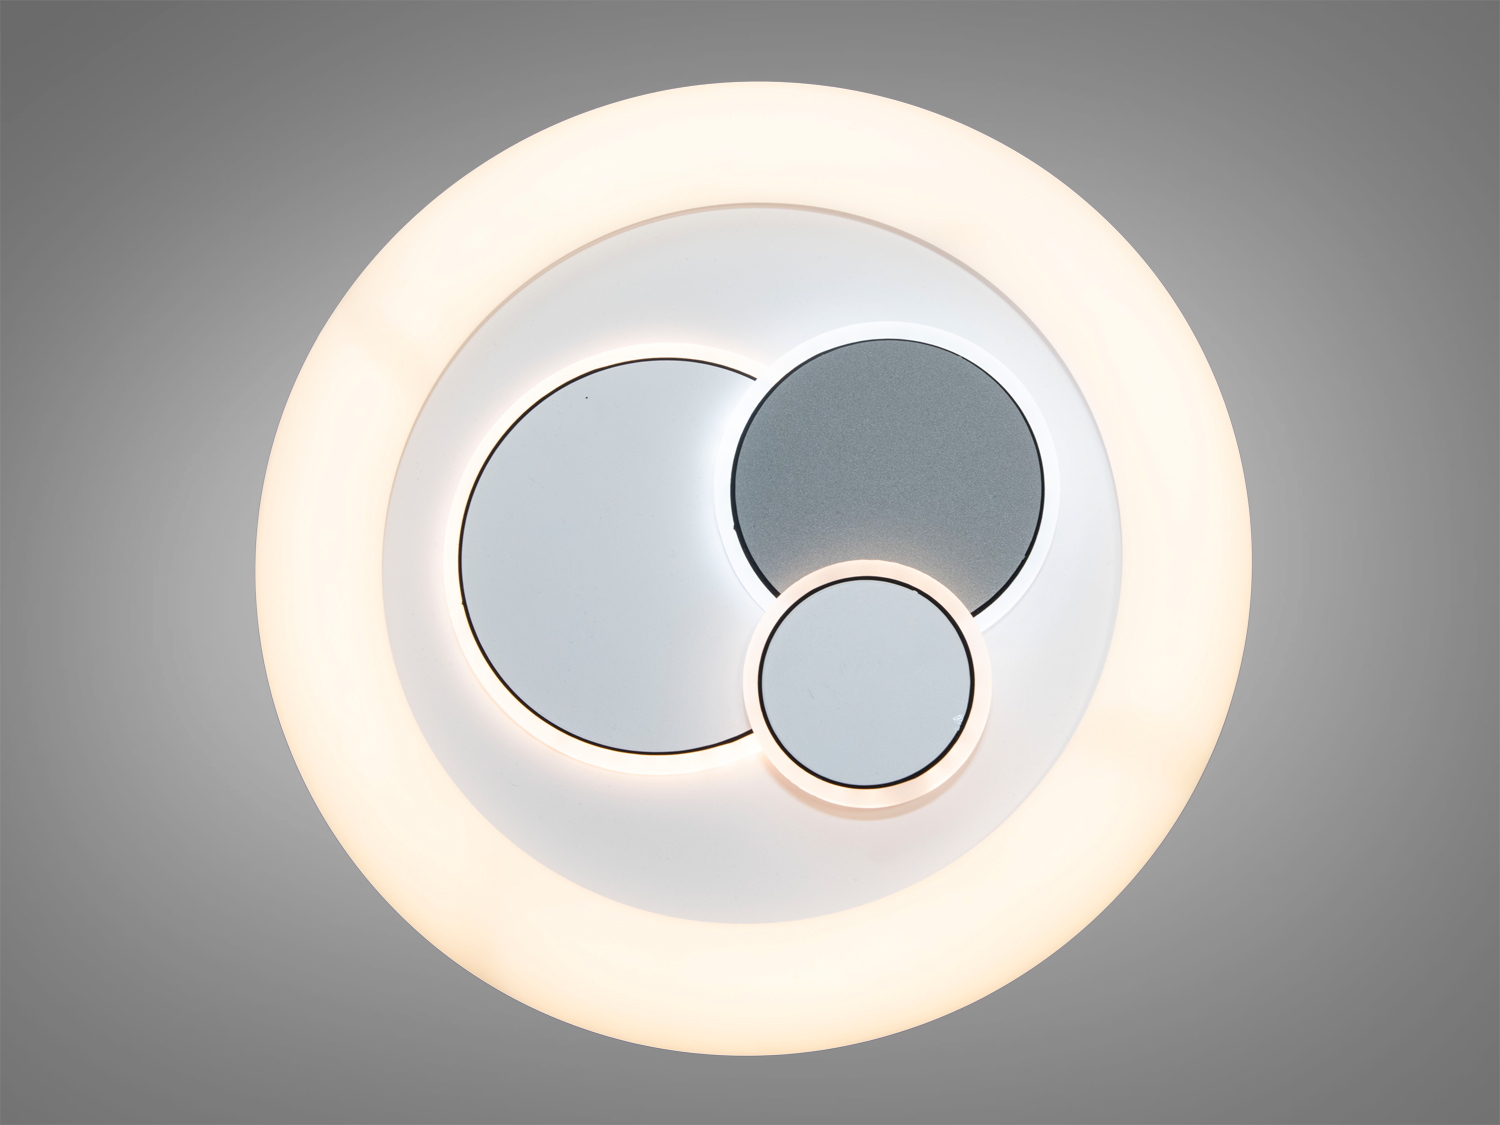 Наш світлодіодний світильник  - це сучасне та ефективне джерело освітлення для вашого простору. Завдяки круглій формі та найсучаснішим технологіям LED, цей світильник вигідно виділяється на фоні інших освітлювальних виробів.
 Основні Характеристики:
Форма: Кругла (всередині гра геометричних фігур).
Матеріал корпусу: Високоякісний фарбований метал.
Матеріал плафону: Акрил.
Діаметр: 30 см - ідеальний для більшості приміщень.
Тип Світлодіодів: Високоефективні та енергоефективні світлодіоди.
Колірна Температура: вибір від теплого білого (2700K), природного білого (4000K) до холодного білого (6500K)
Регульована Яскравість: Так (3 рівні яскравості)
Світловий потік: 2640 люмен
Робочий Термін служби: до  30 000 годин
 Переваги та Особливості:
Енергоефективність:
Світлодіоди забезпечують високий рівень світлового потоку при мінімальному енергоспоживанні, що зменшує витрати на електроенергію.
Тривалість Роботи:
Довгий термін служби світлодіодів забезпечує стійкість та надійність освітлення протягом багатьох років.
Різноманітність Кольорів:
Вибір із теплого та холодного білого світла дозволяє вам адаптувати освітлення до різних обстановок та настрою.
Естетичний Дизайн:
Кругла форма світильника підходить для будь-якого інтер'єру, додаючи естетичну привабливість вашому простору.
Монтаж та Використання:
Легкий у монтажі, підходить для різних приміщень: від квартир і офісів до магазинів і ресторанів.
Екологічно Чистий:
Відсутність шкідливих ртутних компонентів робить його екологічно безпечним.
 
Часті запитання та відповіді про світлодіодні світильники:
Чи можна використовувати світлодіодний світильник у вологих приміщеннях, таких як ванна кімната?
Так, багато світлодіодних світильників мають високий ступінь захисту від вологи і підходять для ванних кімнат.
Як вибрати правильний розмір світлодіодного світильника для кімнати?
Рекомендуємо враховувати розмір кімнати та її призначення. Ми завжди готові допомогти вам обрати оптимальний розмір.
Скільки лампочок знаходиться у світлодіодному світильнику?
Кількість світлодіодів може варіюватися залежно від моделі. У цьому конкретному випадку, це може бути від 50 до 100 світлодіодів в залежності від потужності та моделі.
Які кольорові температури підходять для різних приміщень? Тепле біле світло (2700K) ідеально підходить для спальні, природне біле (4000K) для офісу, а холодне біле (6500K) для кухні чи областей, де потрібне яскраве освітлення.
Які переваги використання світлодіодного освітлення порівняно з іншими джерелами світла?
Світлодіоди енергоефективні, мають довгий термін служби, не випромінюють тепла та можуть бути розфарбованими у різні кольори.
Наш світлодіодний світильник  - це ідеальний вибір для тих, хто цінує стиль, функціональність та ефективність у своєму освітленні. Дбайливо розроблений та виготовлений, він гарантує найкращі параметри якості світла та комфорту в приміщенні.
Придбайте наш світлодіодний світильник і зробіть ваш простір яскравішим та більш ефективним!
 